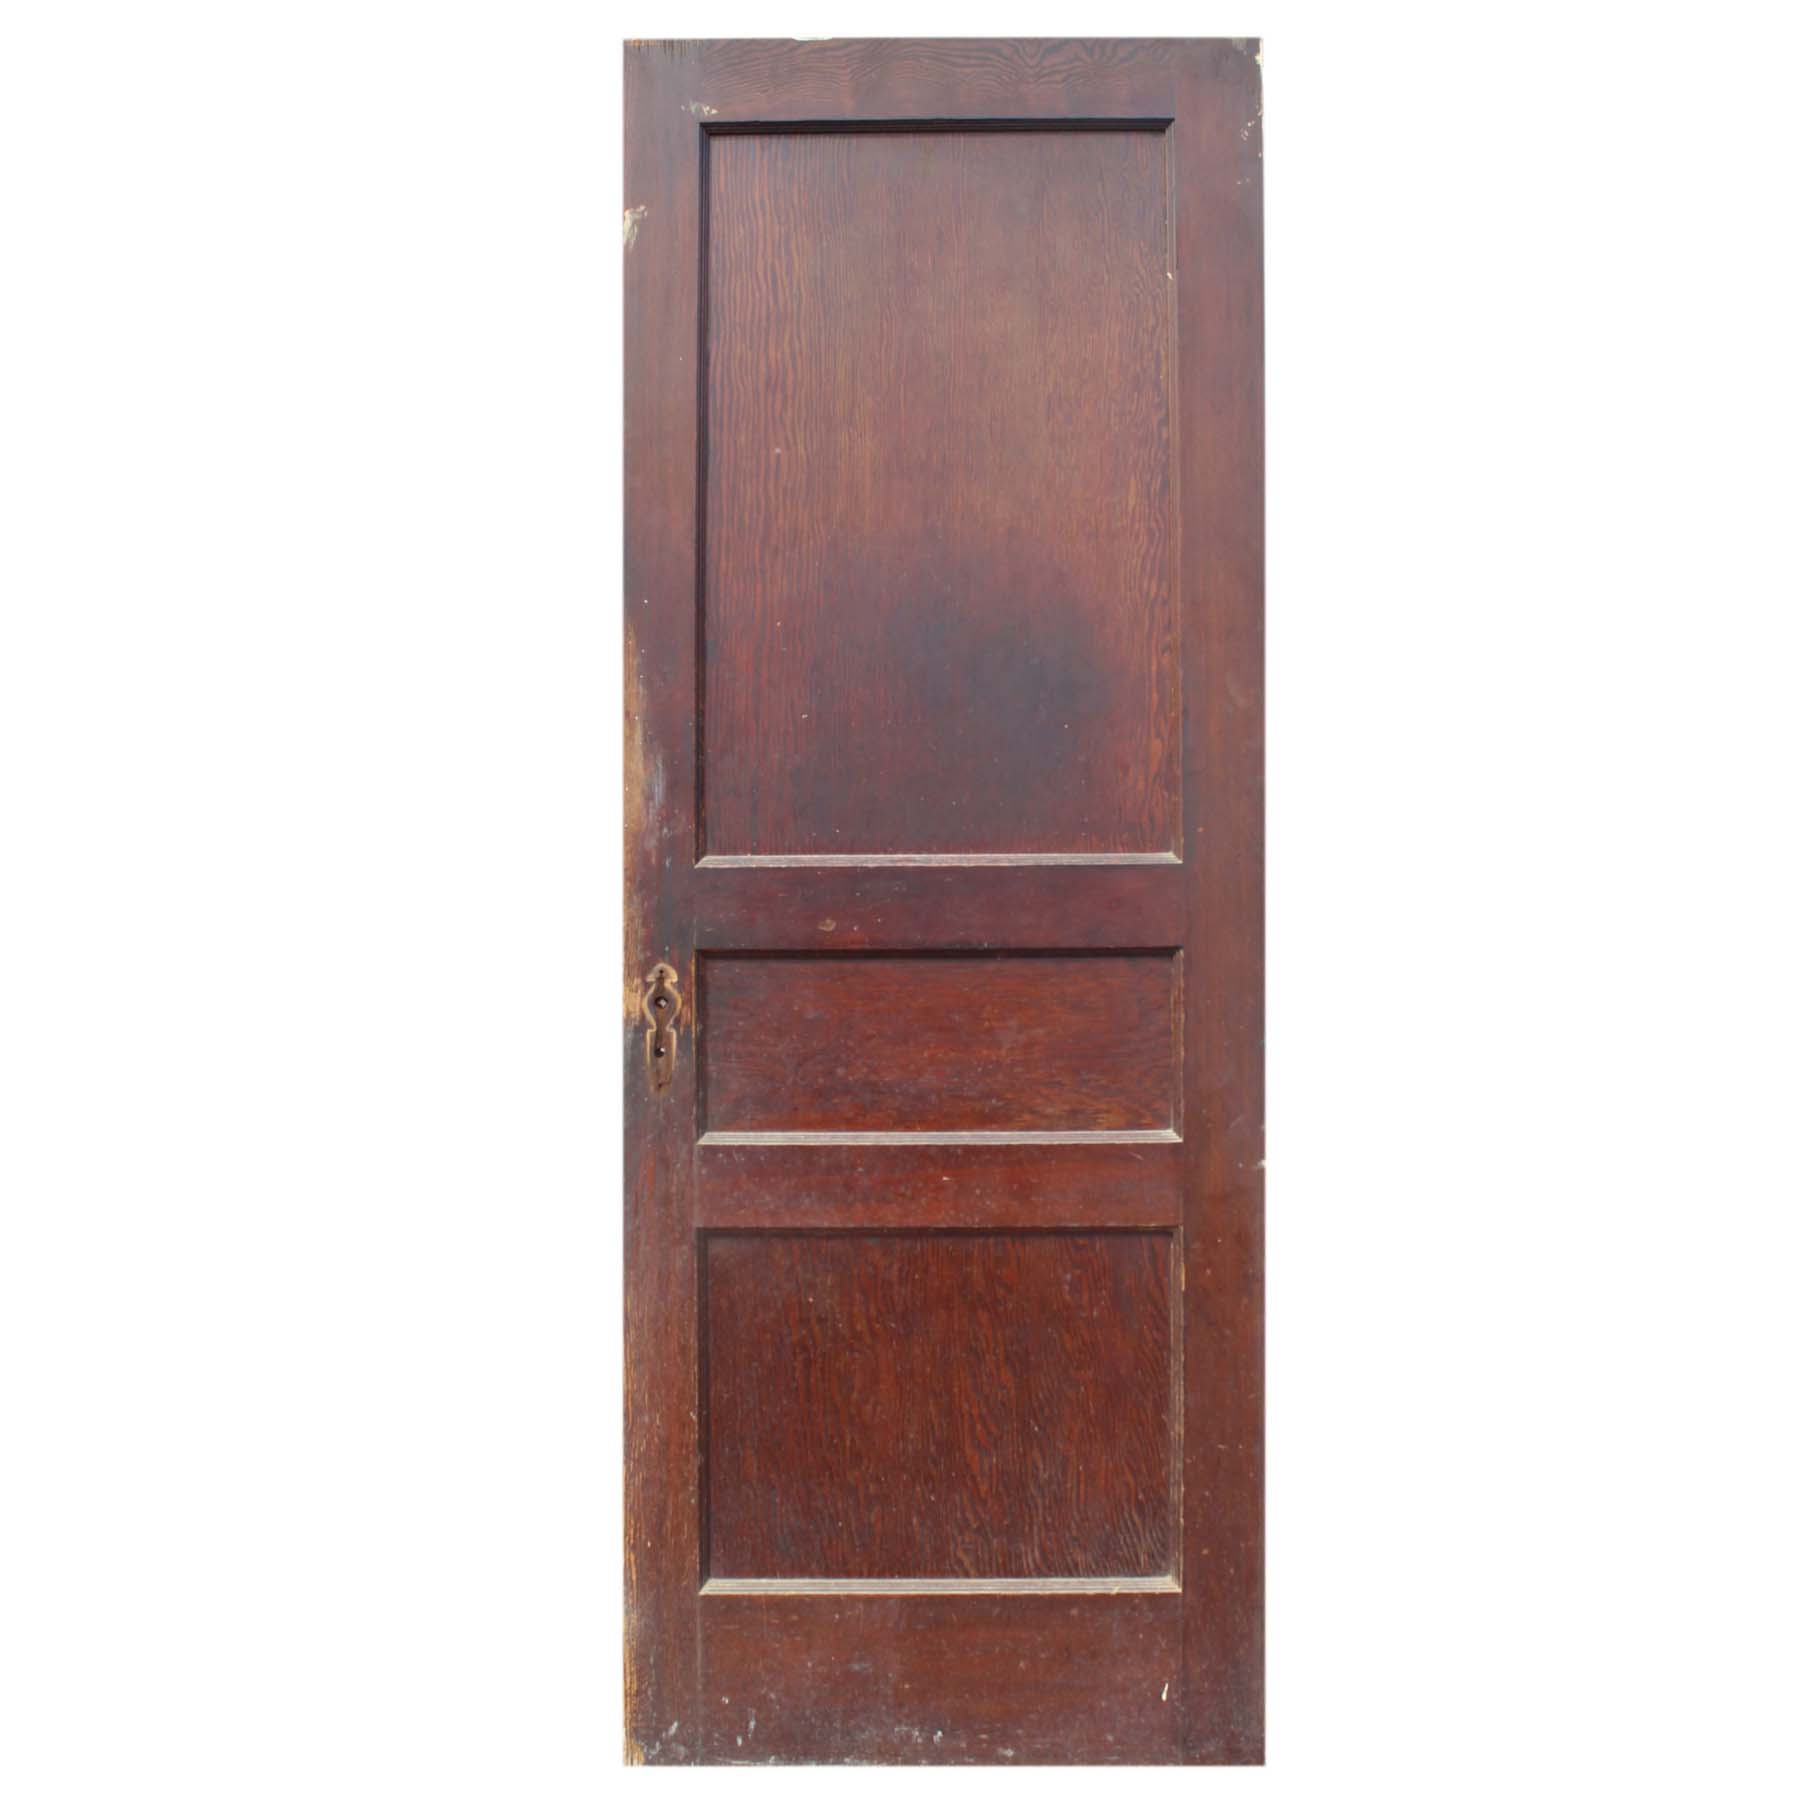 SOLD Reclaimed 29” Three-Panel Solid Wood Door-0